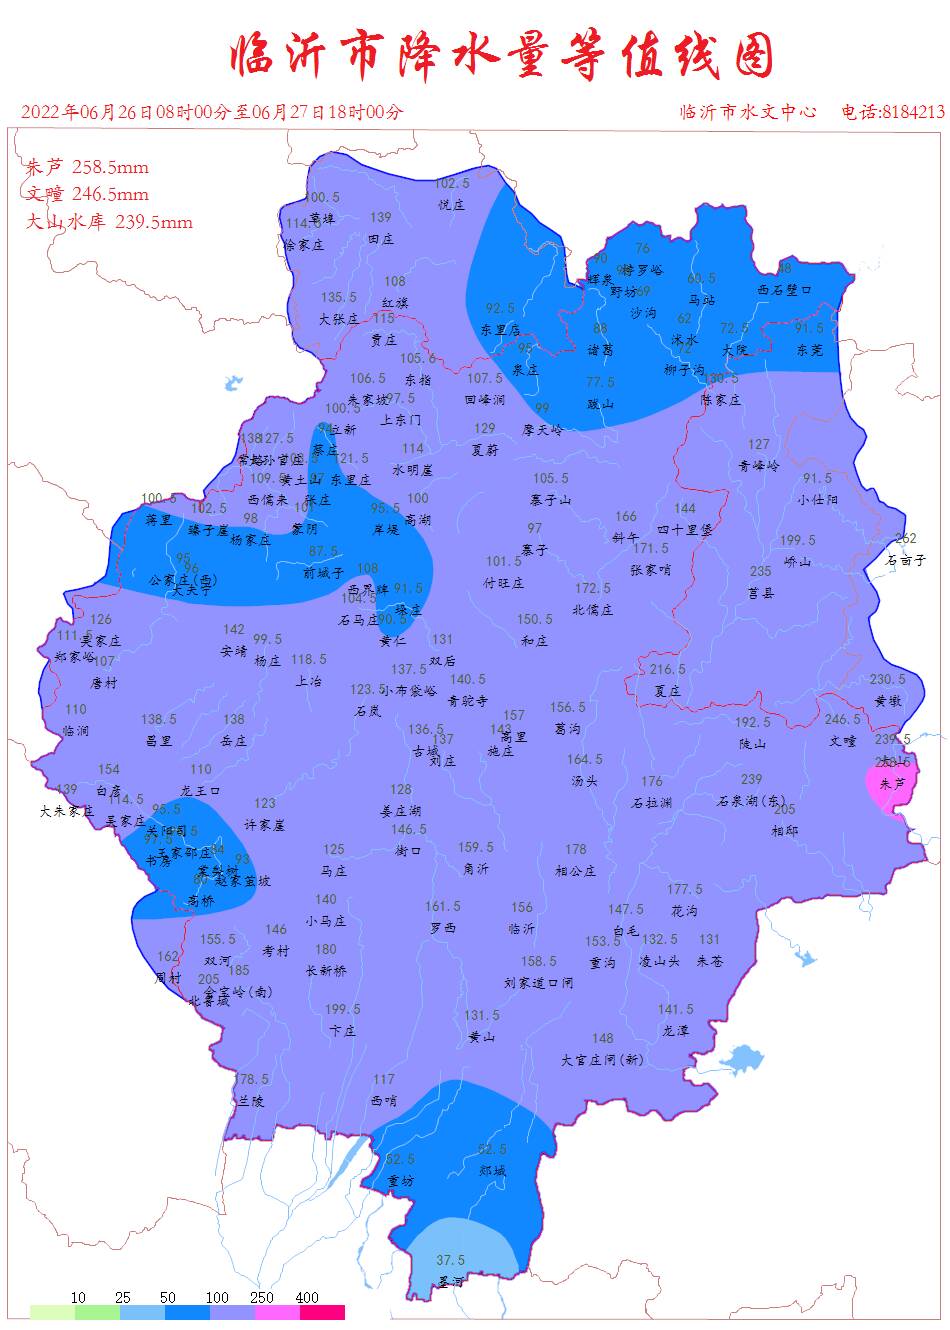 26日8时至27日18时临沂市平均降水量131.6mm，最大降水量出现在莒南朱芦为258.5mm